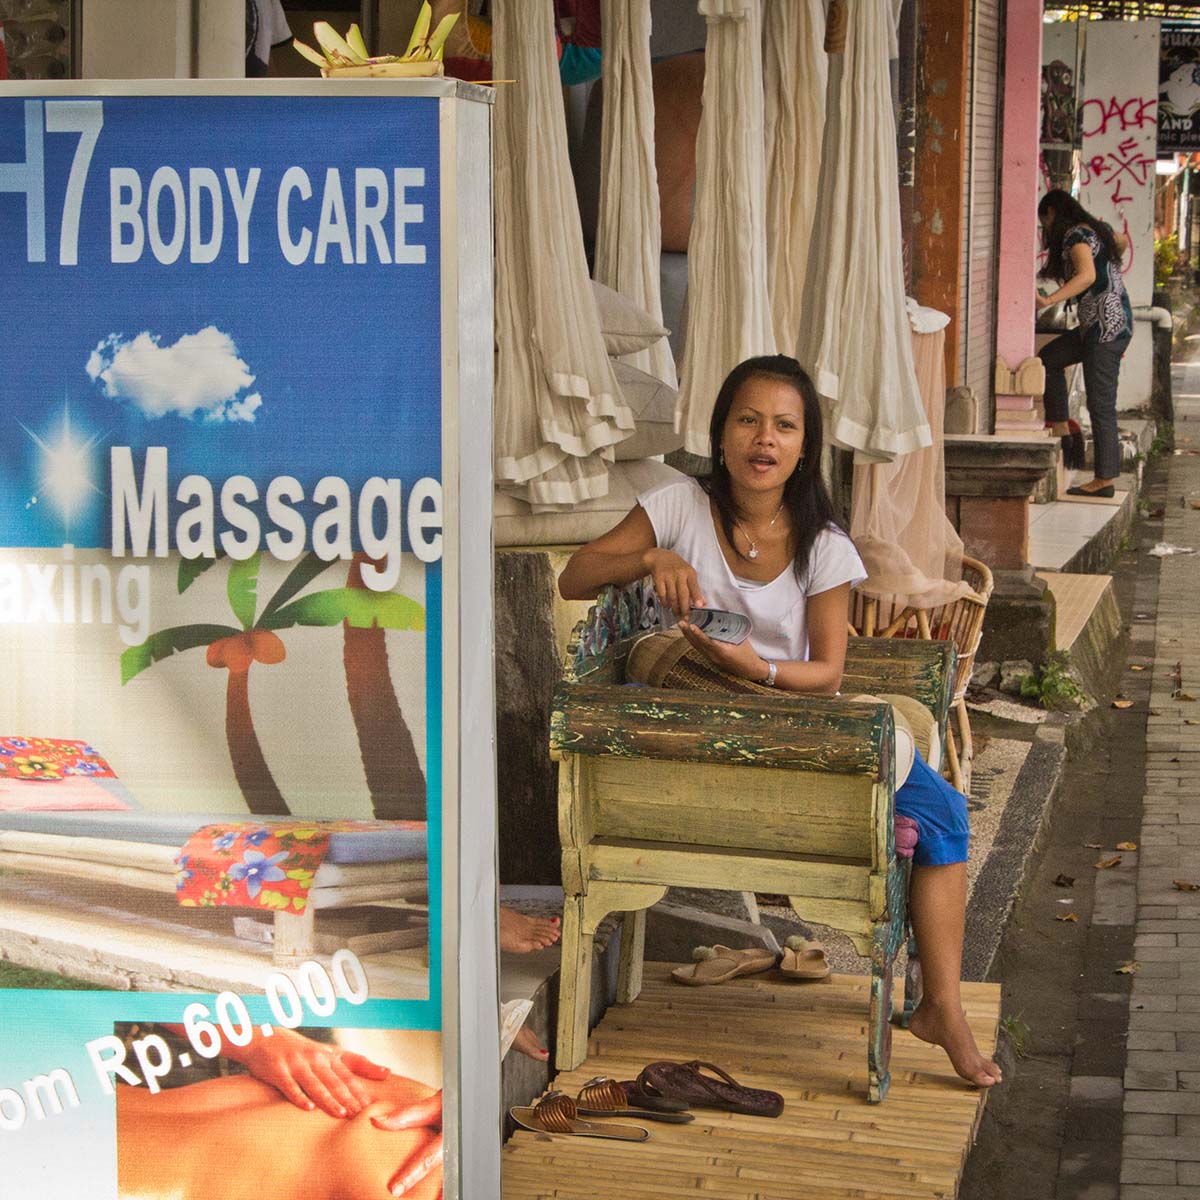 Penis massage in Bali An awkward massage moment image